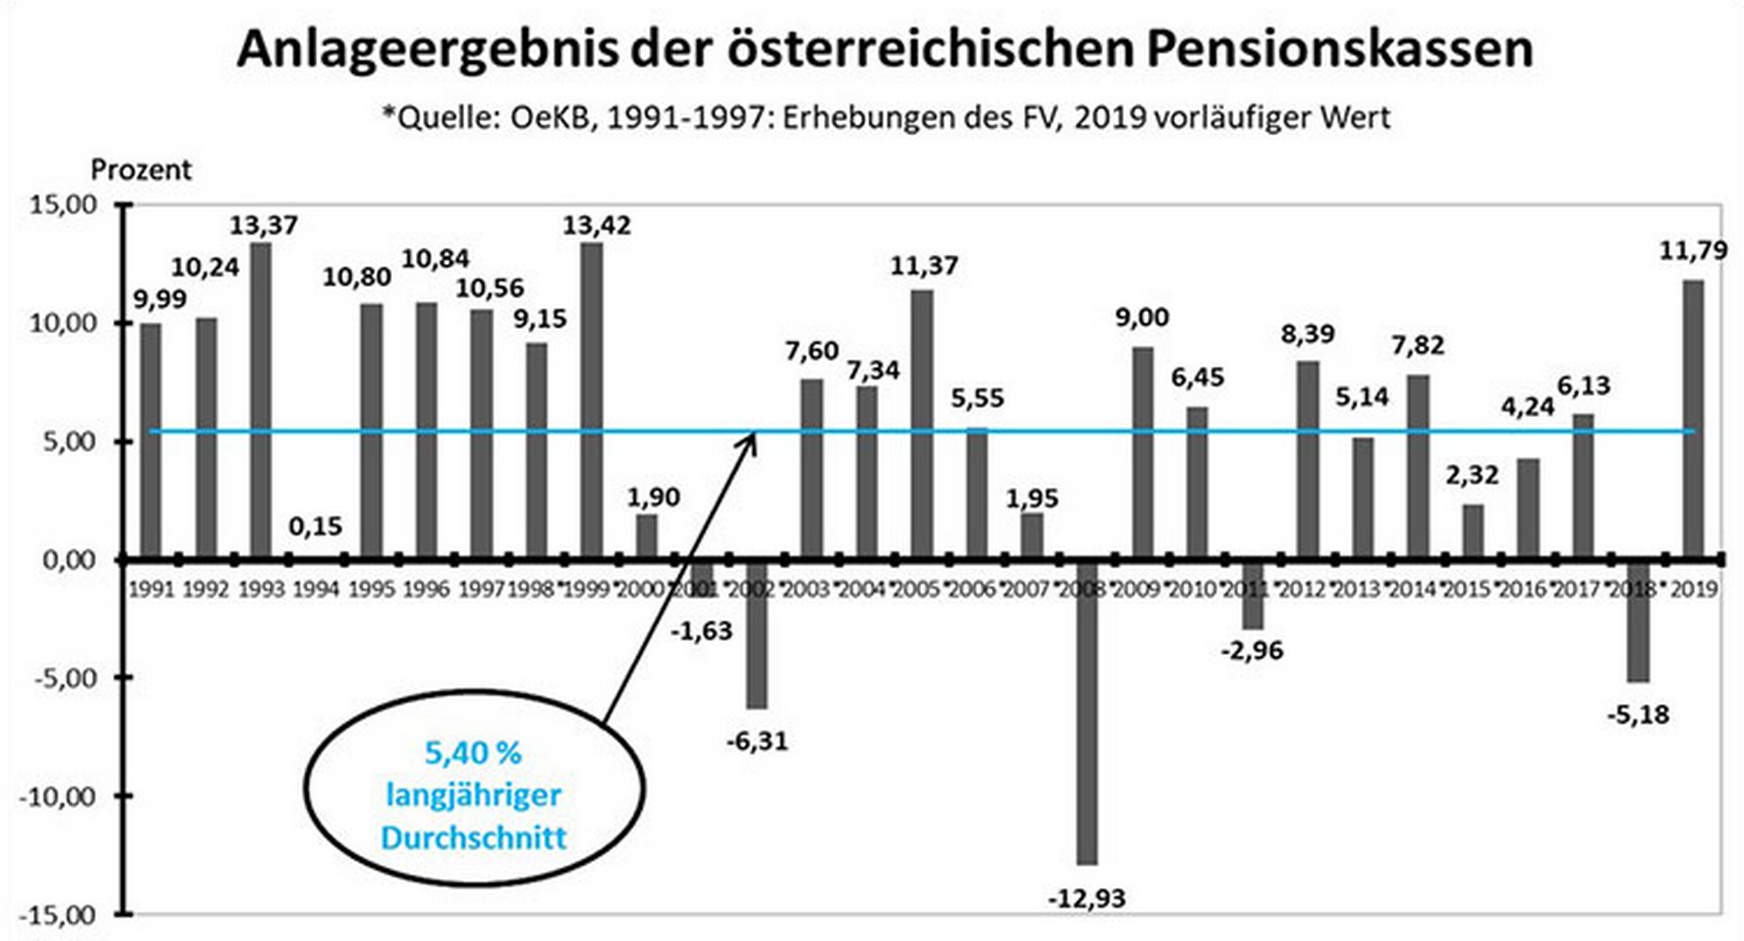 Balkendiagramm zum Anlageergebnis der österreichischen Pensionskassen im Jahresvergleich von 1991 bis 2019